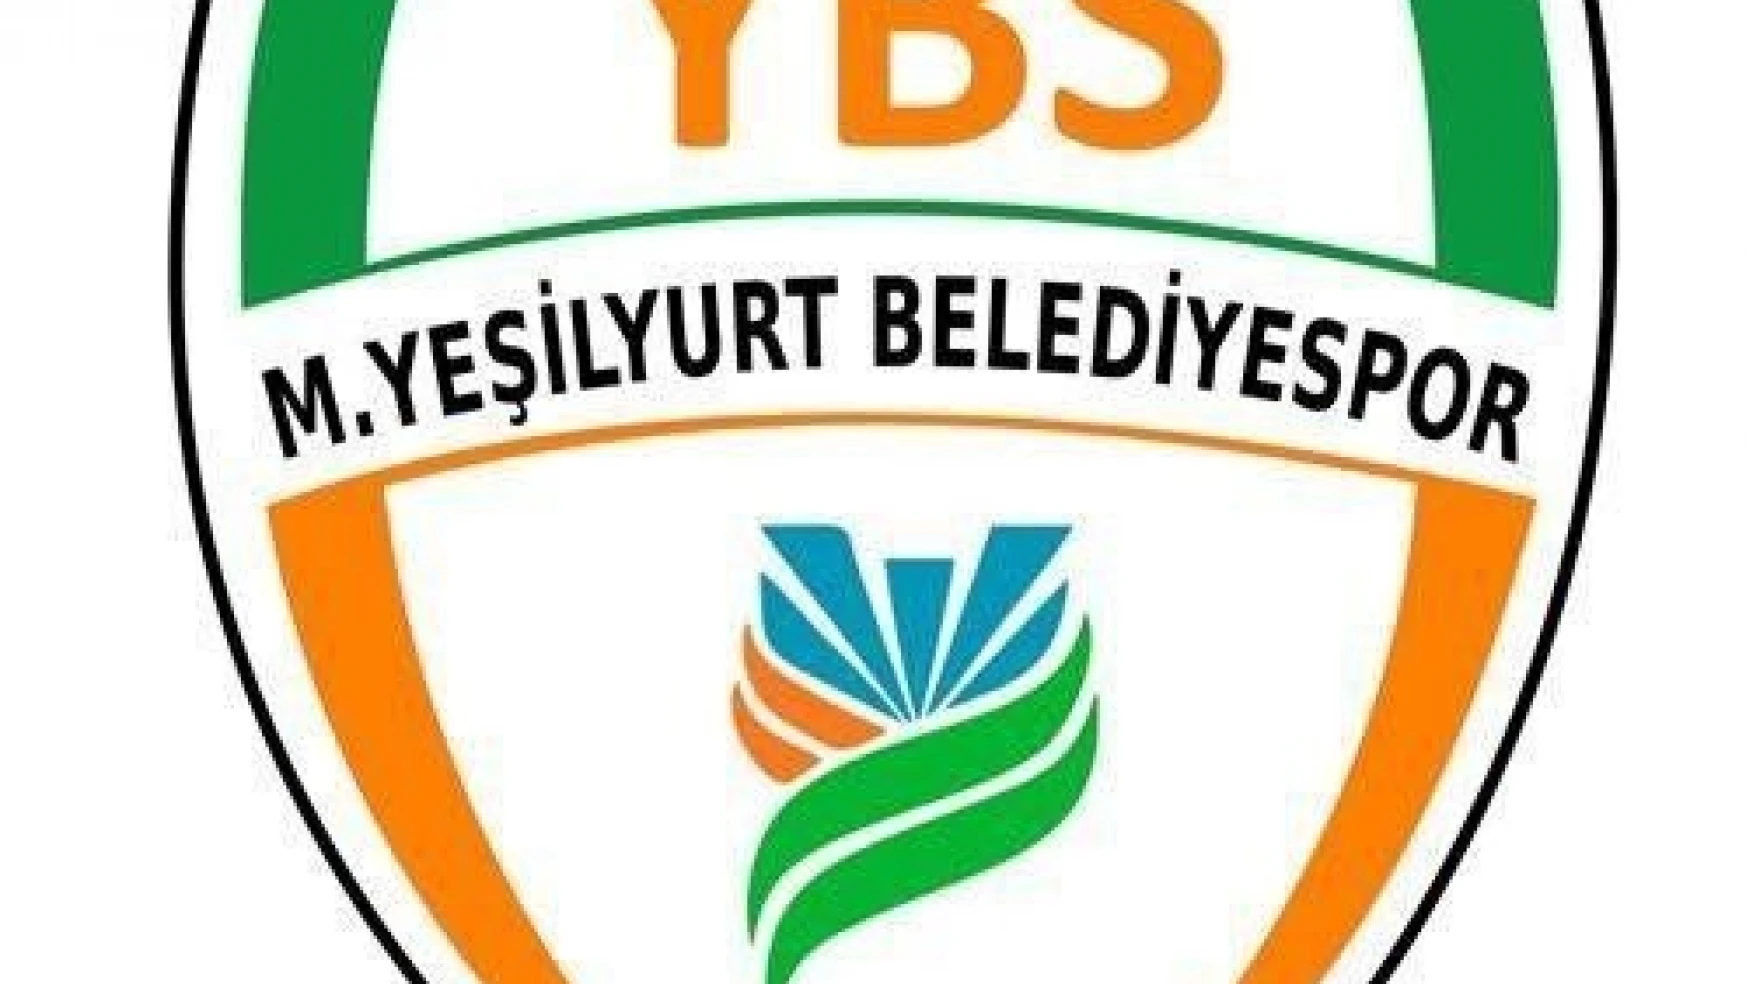 Yeşilyurt Belediyespor'dan 'yıpratılıyoruz' açıklaması
